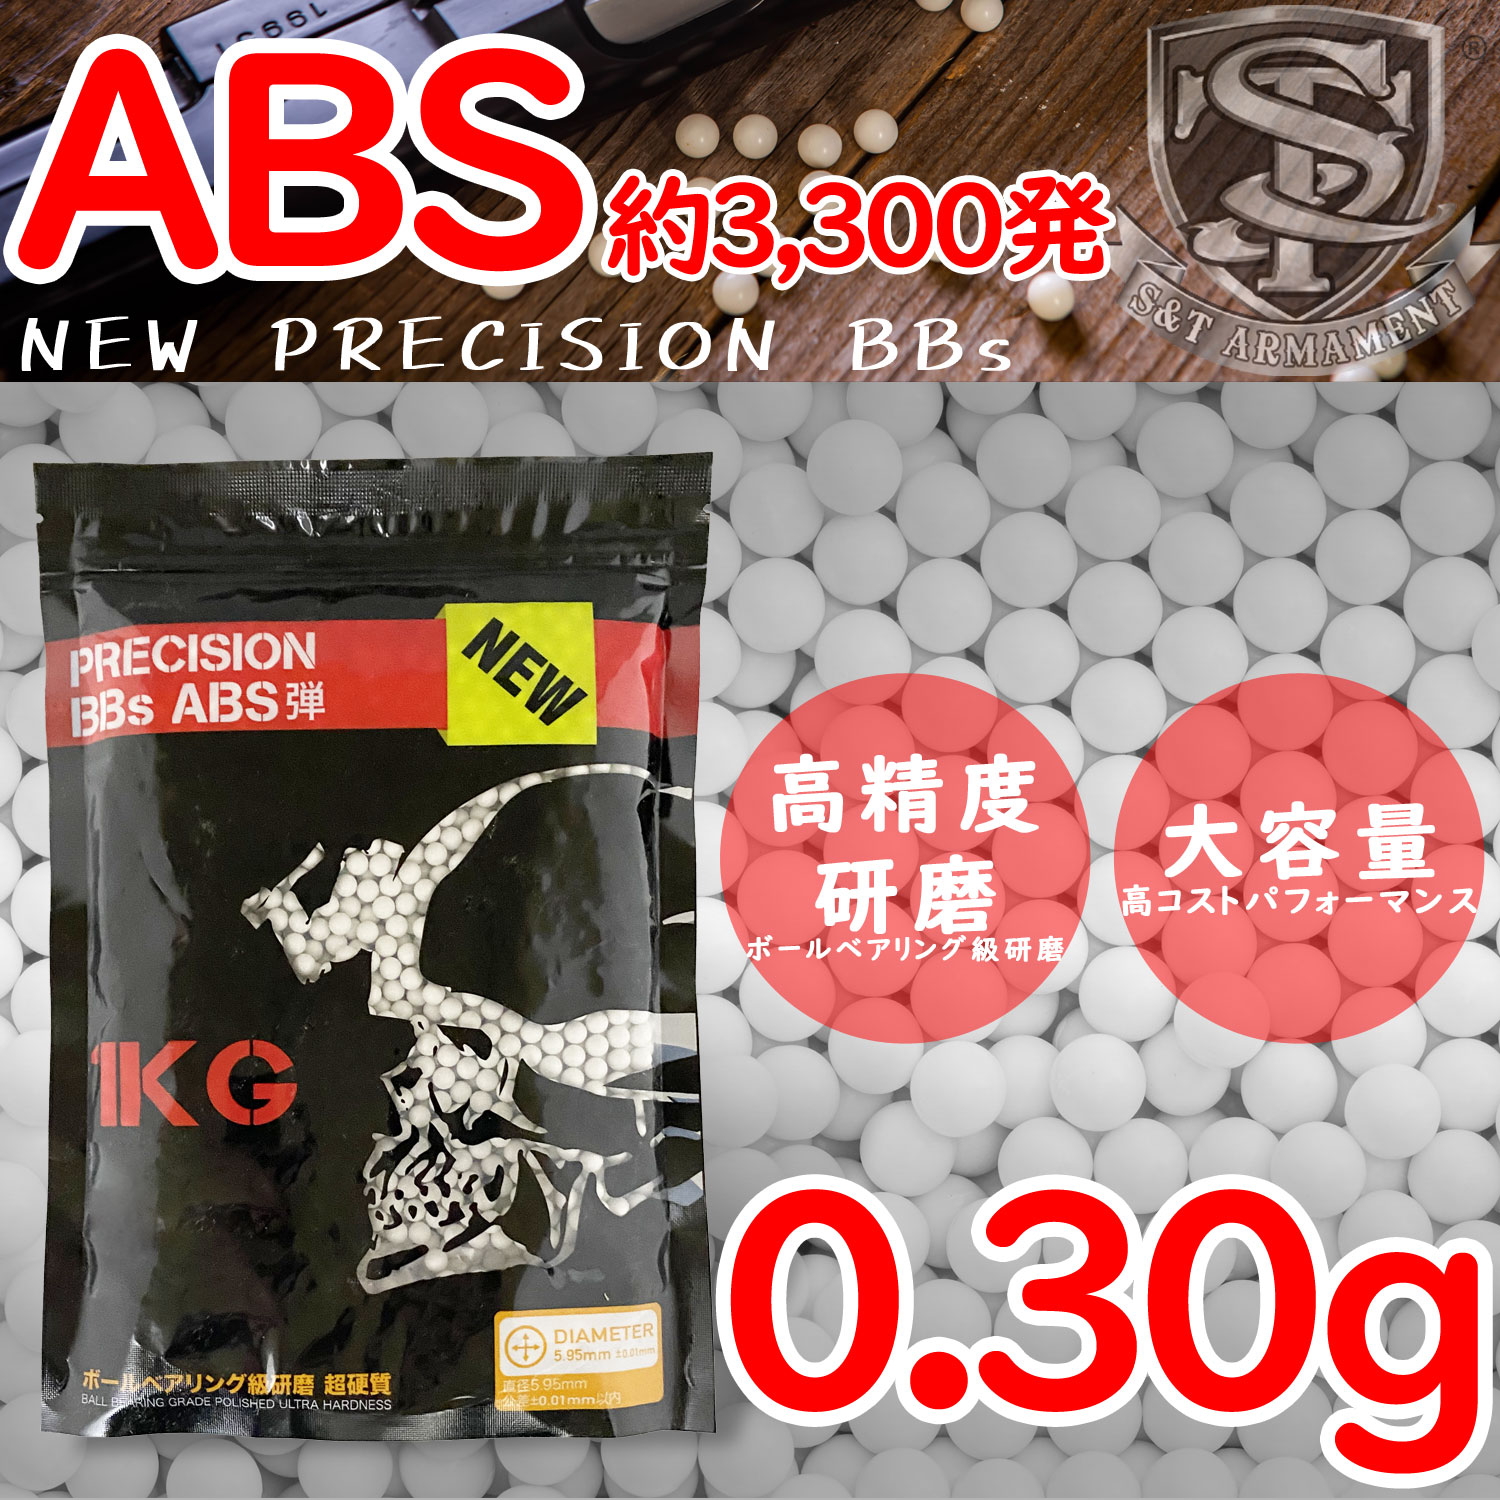 524پʡբǰͤĩ!! S&T NEW PRECISION 6mm ץ饹åBB(ABS) 0.30g 3300ȯ